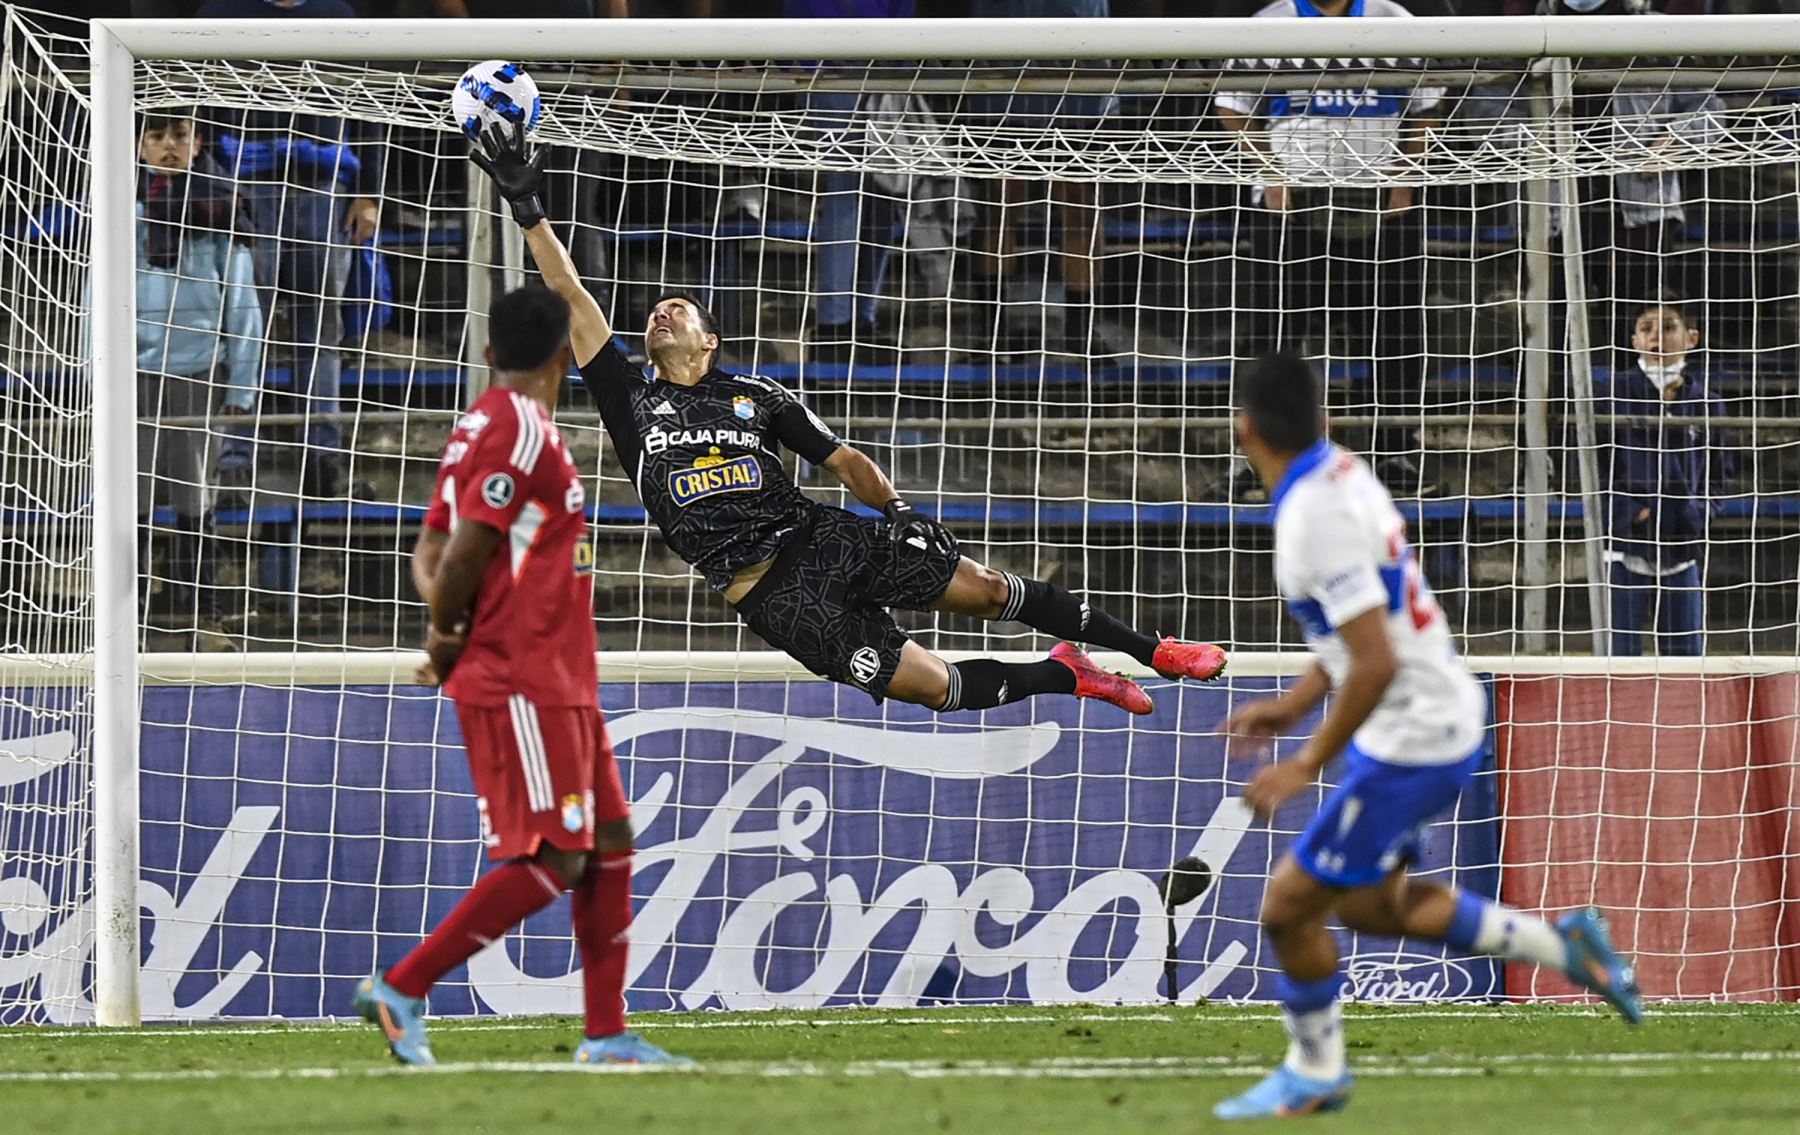 Con un polémico final, Cristal perdió por 2-1 contra la Católica de Chile. Foto: AFP